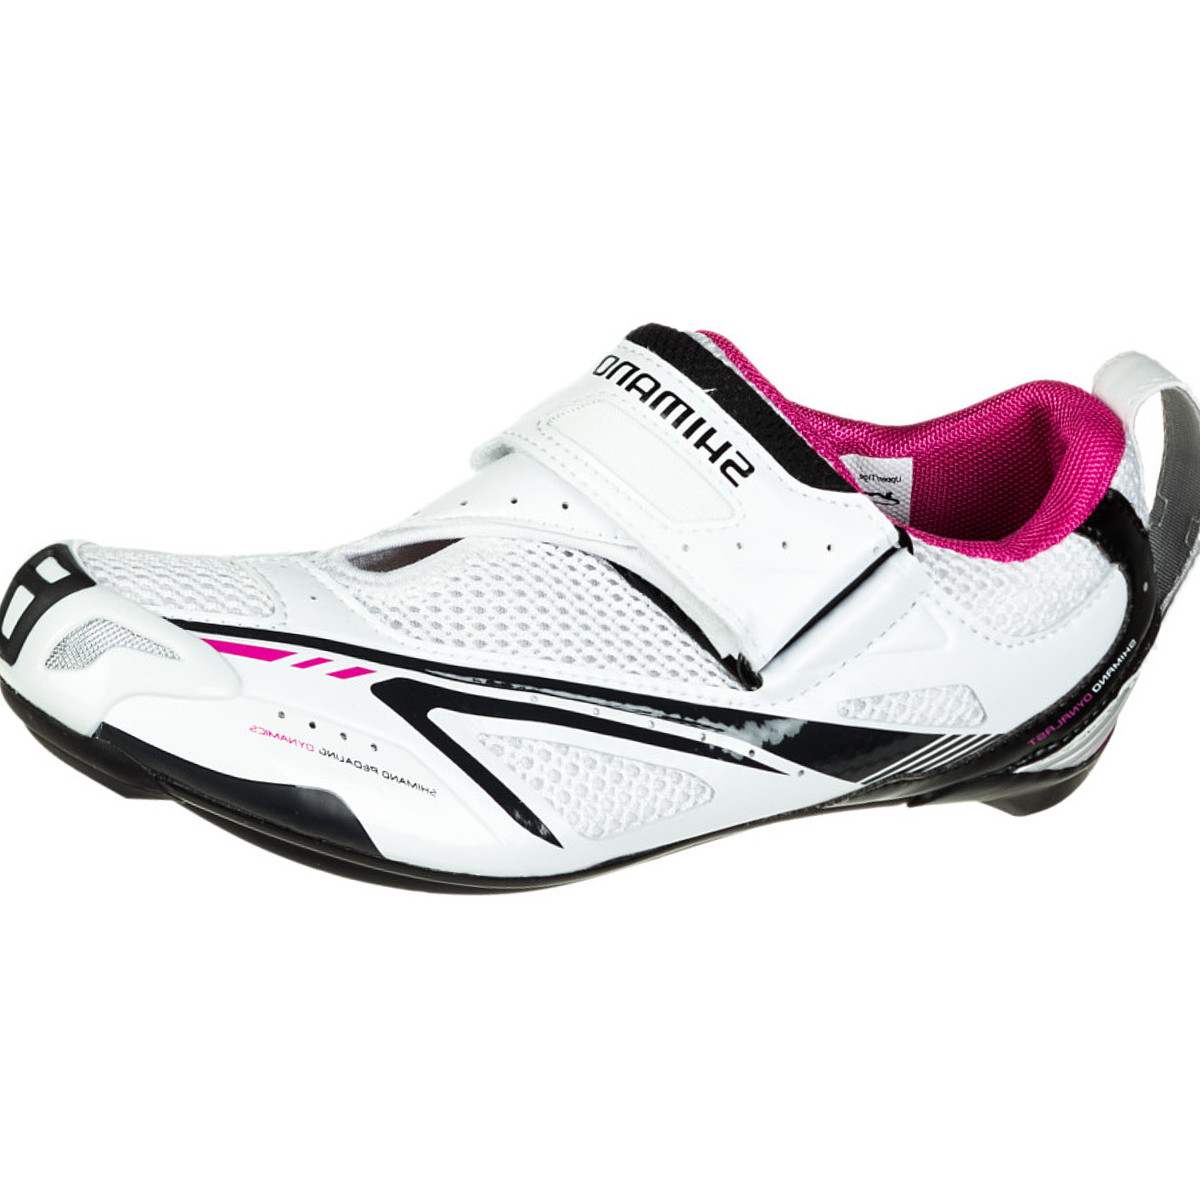 Shimano SH-WT60 Cycling Shoe - Women's